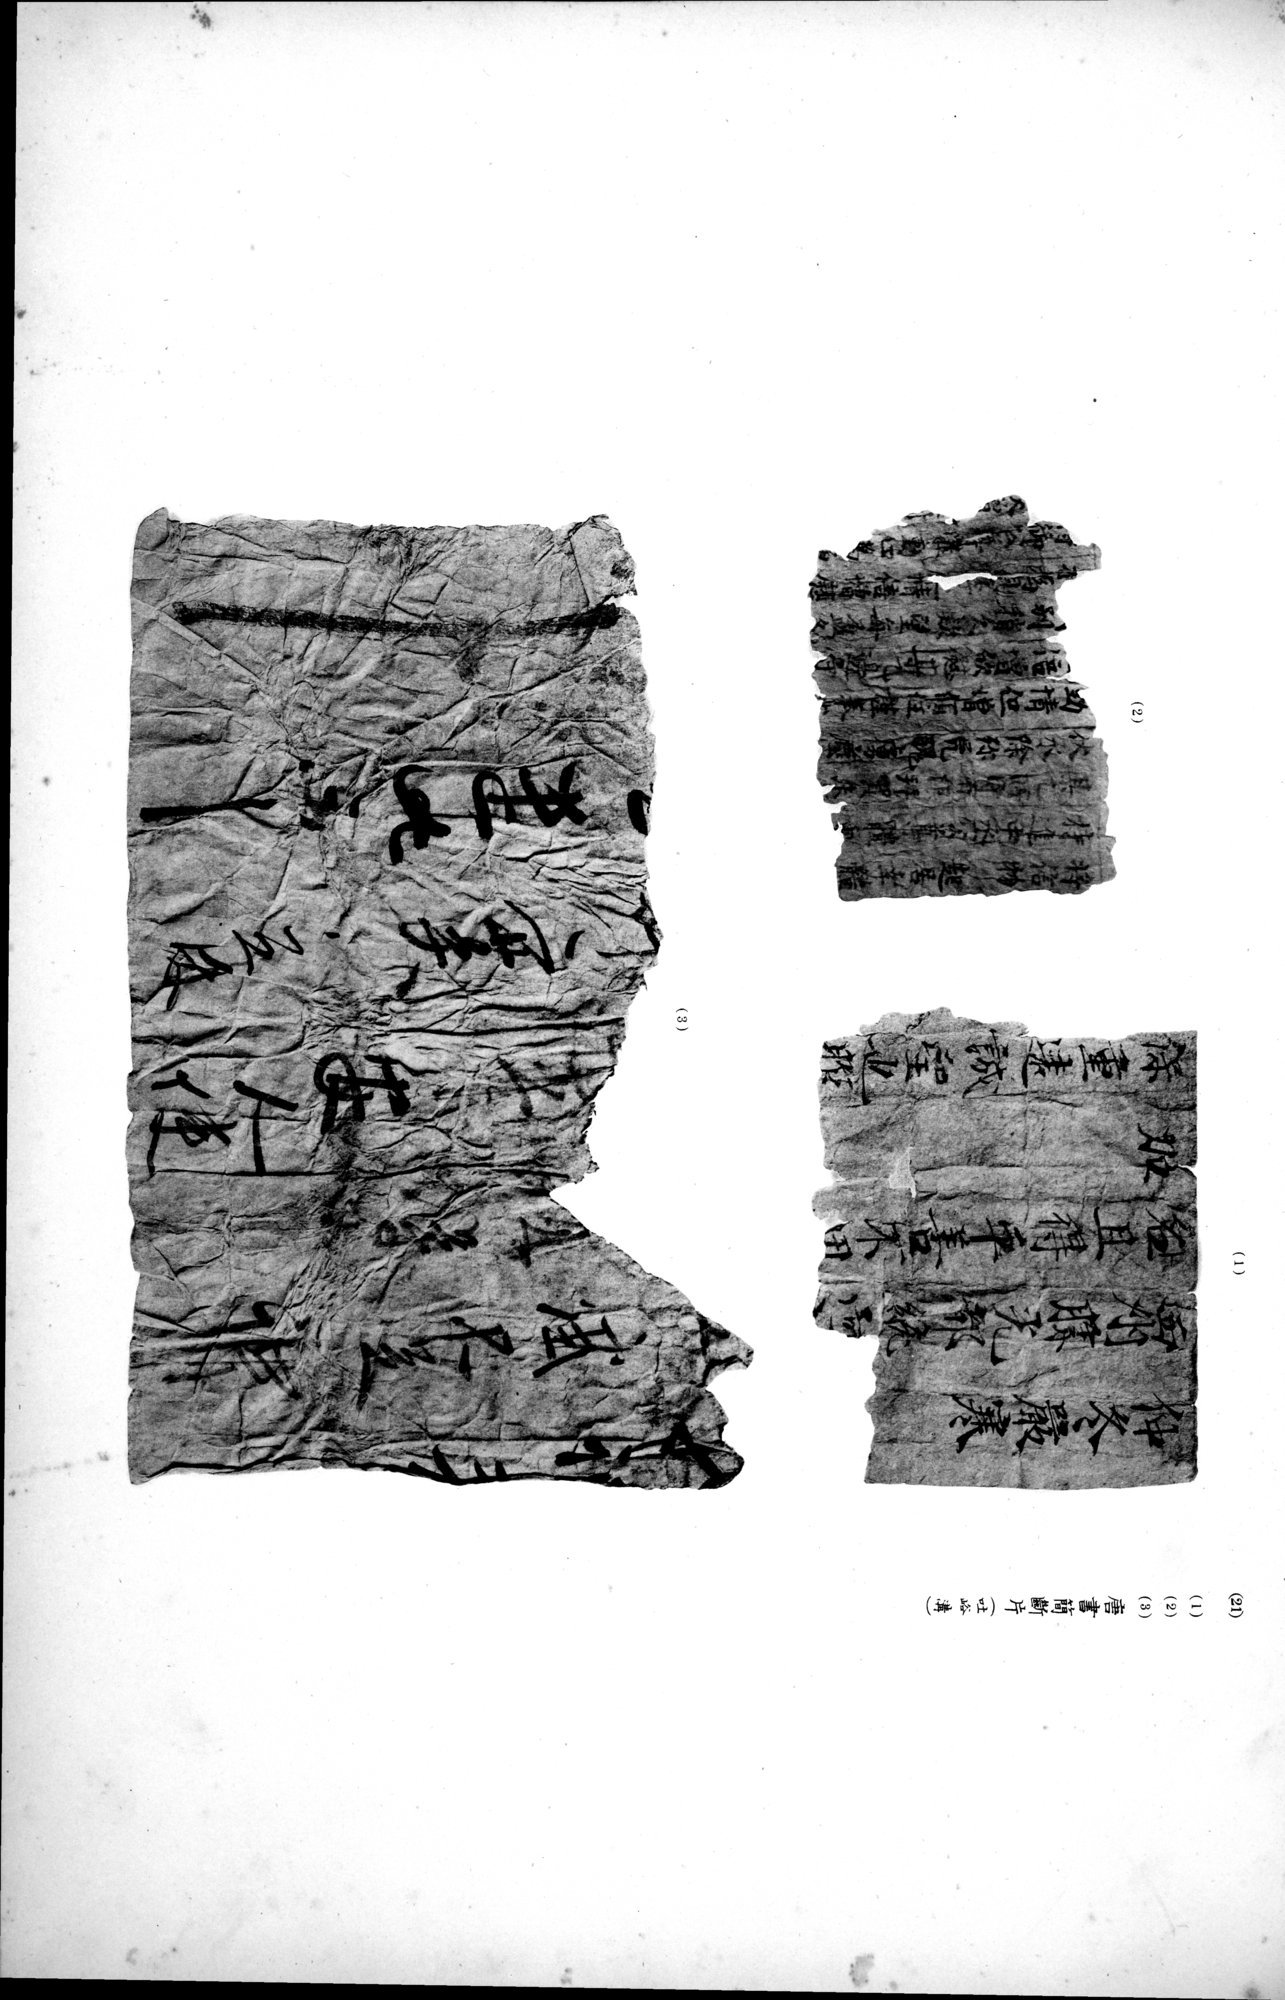 西域考古図譜 : vol.2 / Page 215 (Grayscale High Resolution Image)